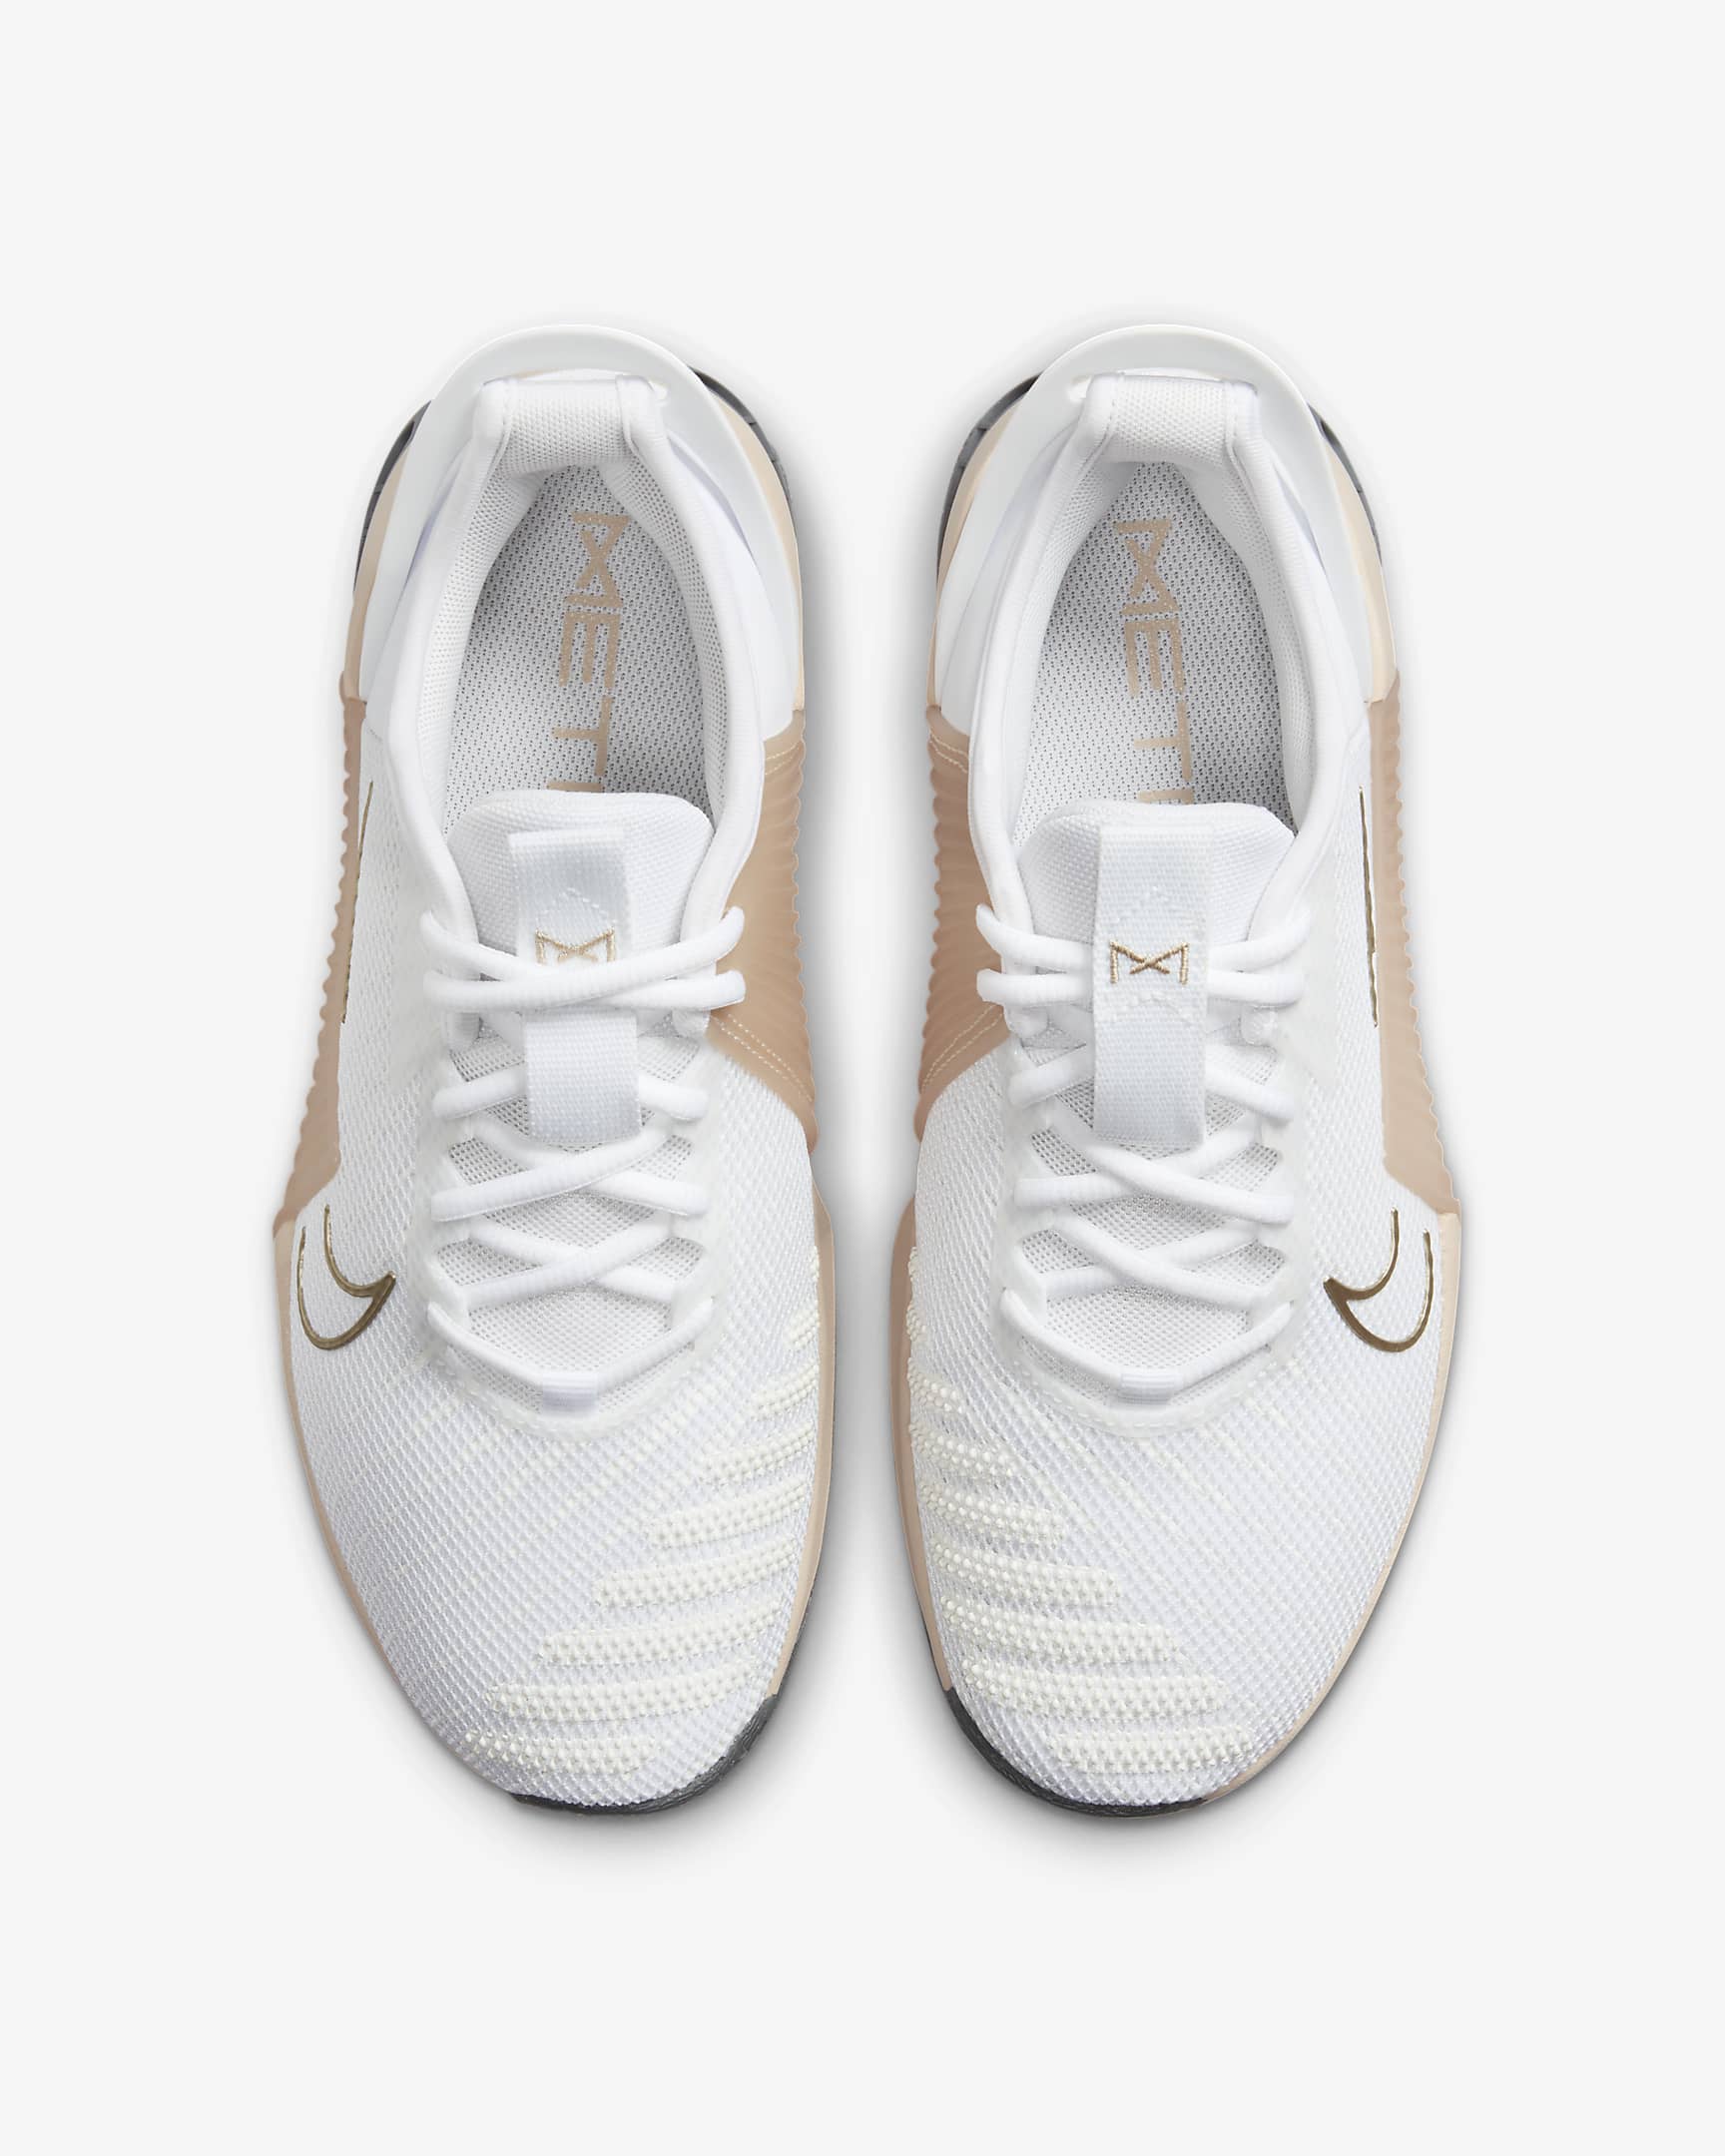 Chaussure d'entraînement Nike Metcon 9 EasyOn pour femme - Blanc/Metallic Gold Grain/Sanddrift/Blanc